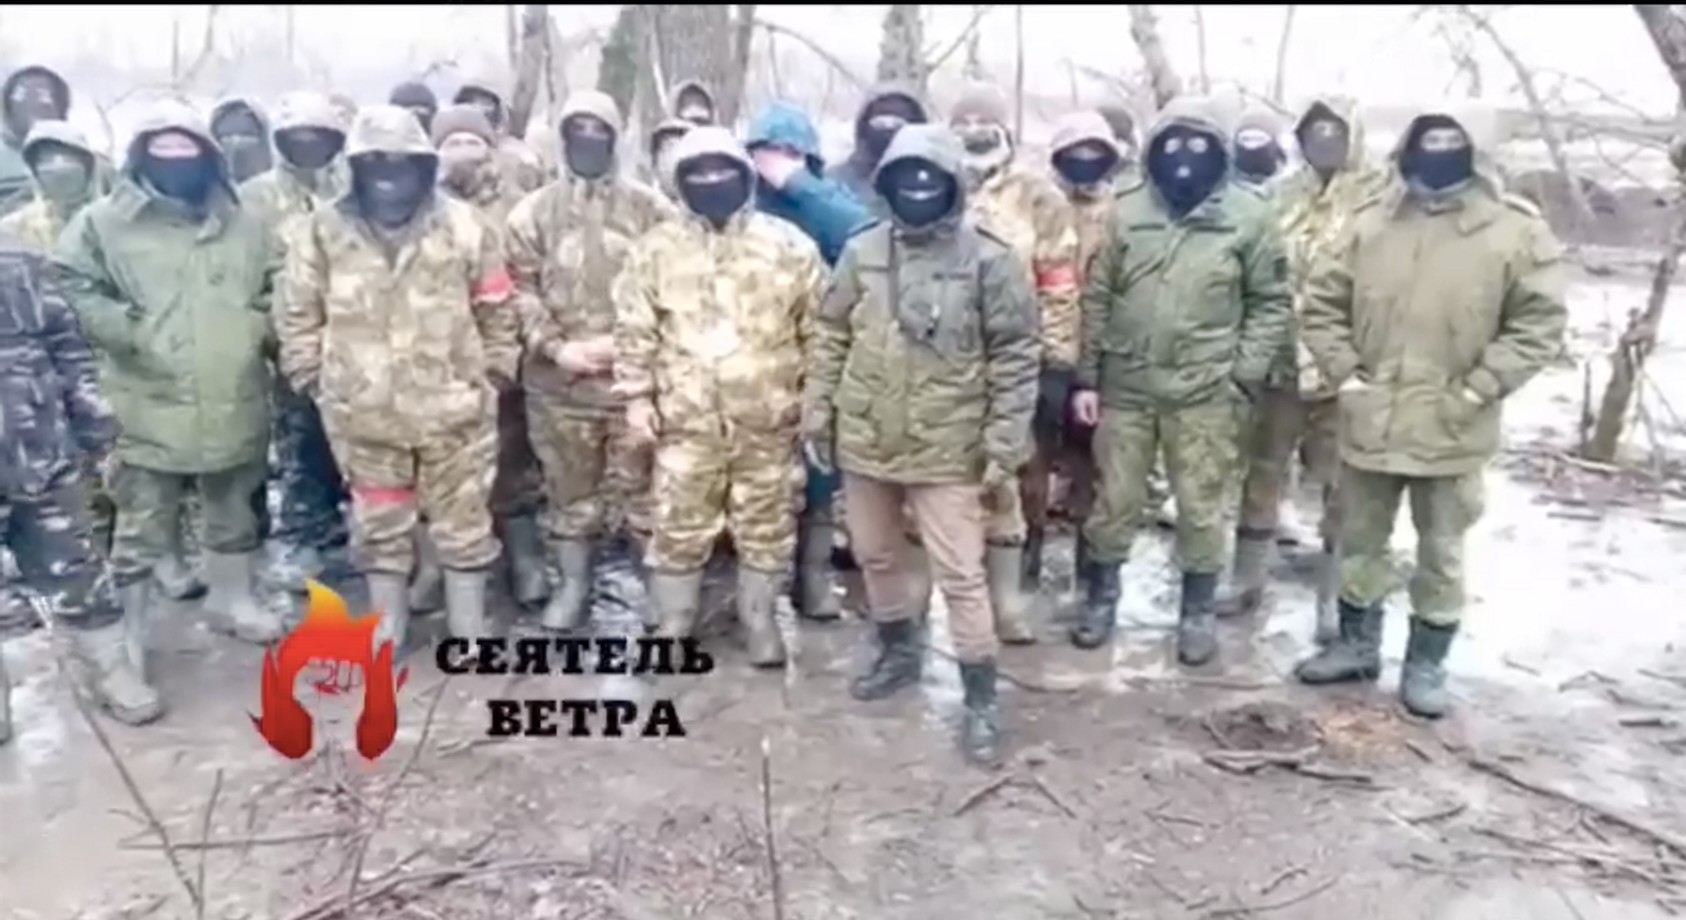 Мобилизованные из Серпухова рассказали, что их отправили на провальный штурм со стрелковым оружием и лопатами